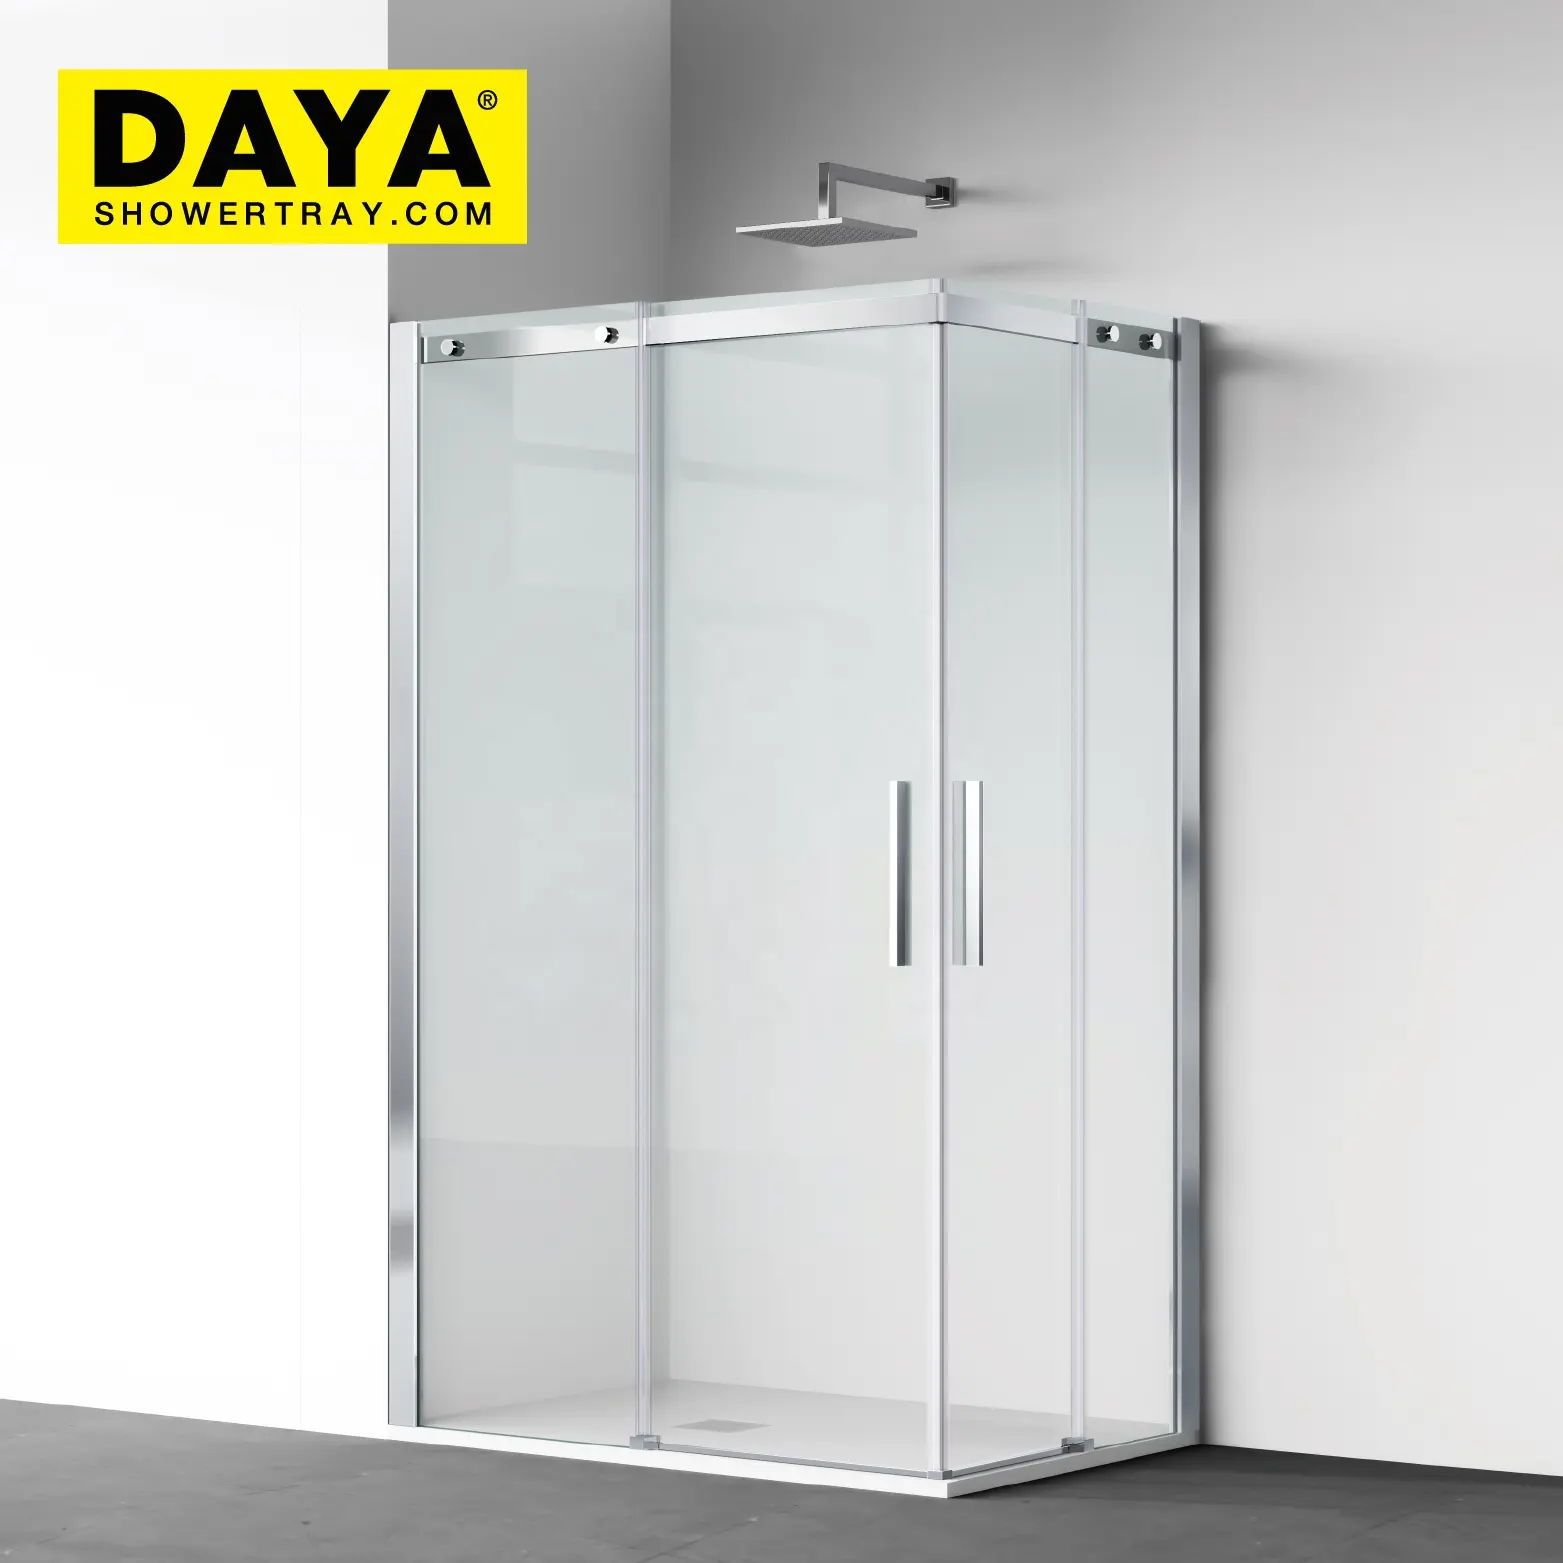 Diseño popular Cabina de ducha de vidrio templado Baño Puerta de vidrio fácil de limpiar Cuarto de ducha con puerta corredera de Ducha